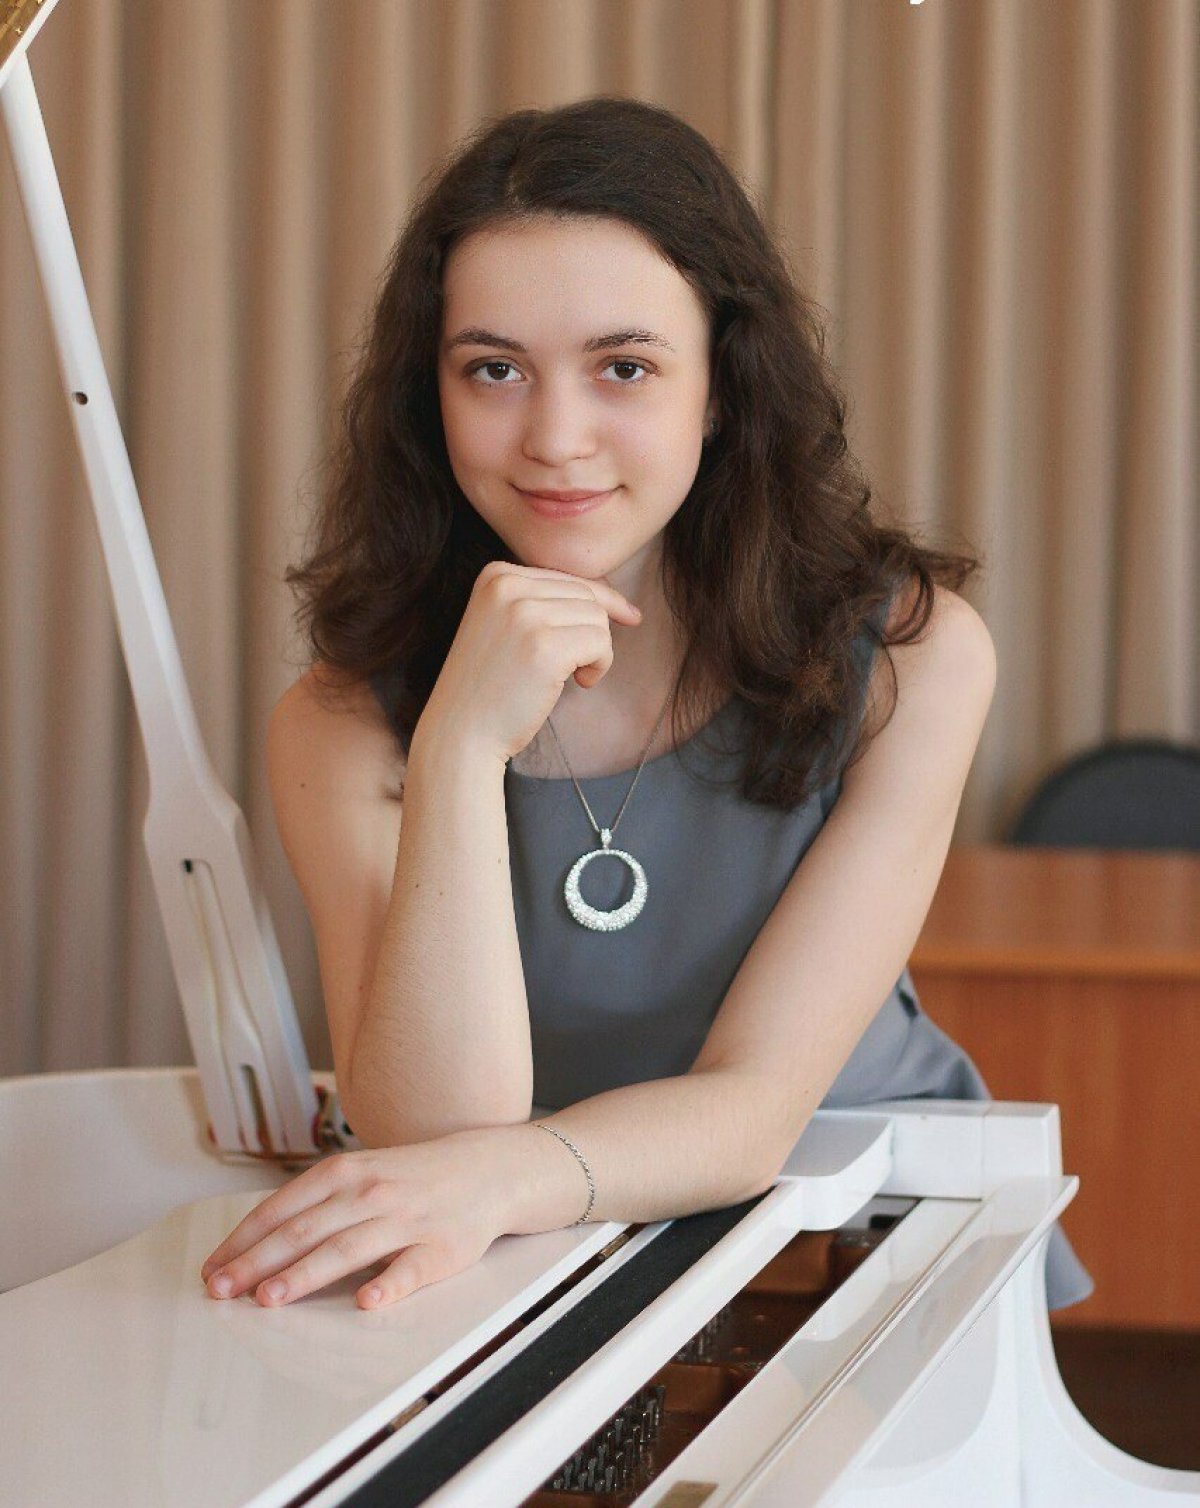 В столице Грузии - г. Тбилиси завершился II Международный конкурс музыкантов-исполнителей имени В.Н. Чачавы - выдающегося музыканта - пианиста, концертмейстера, педагога.